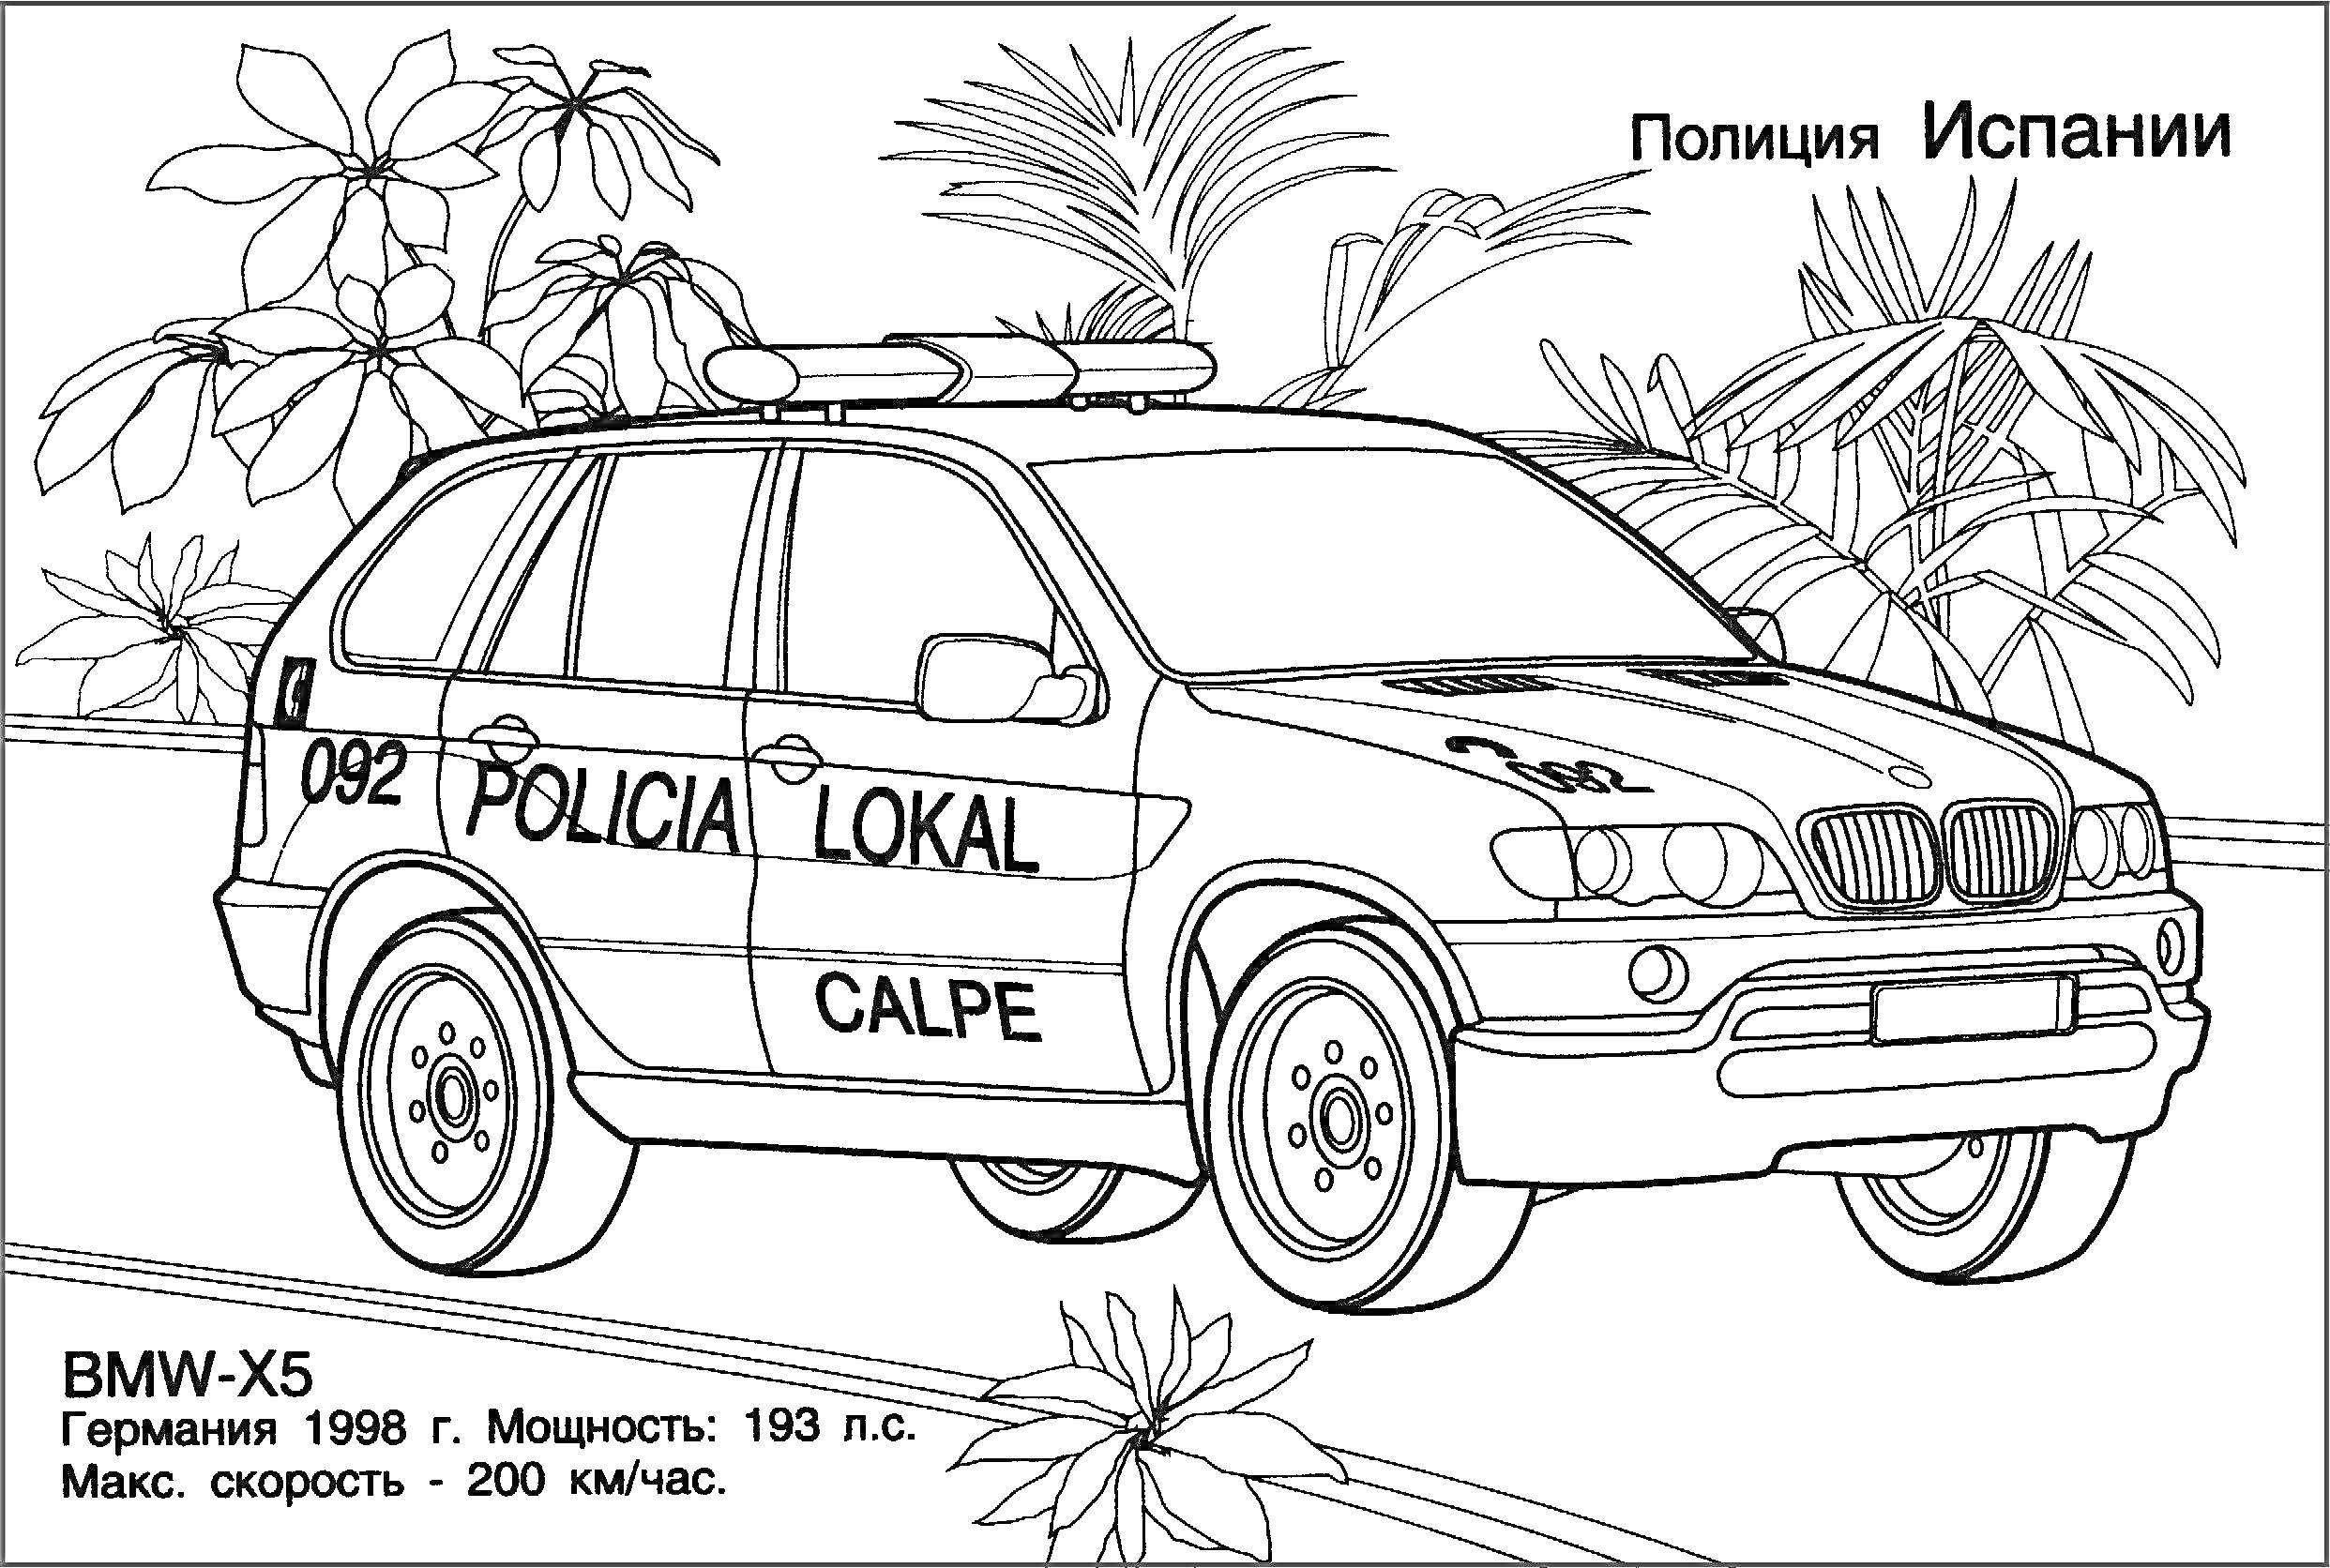 Полиция Испании - полицейский автомобиль BMW-X5 с пальмами на заднем плане